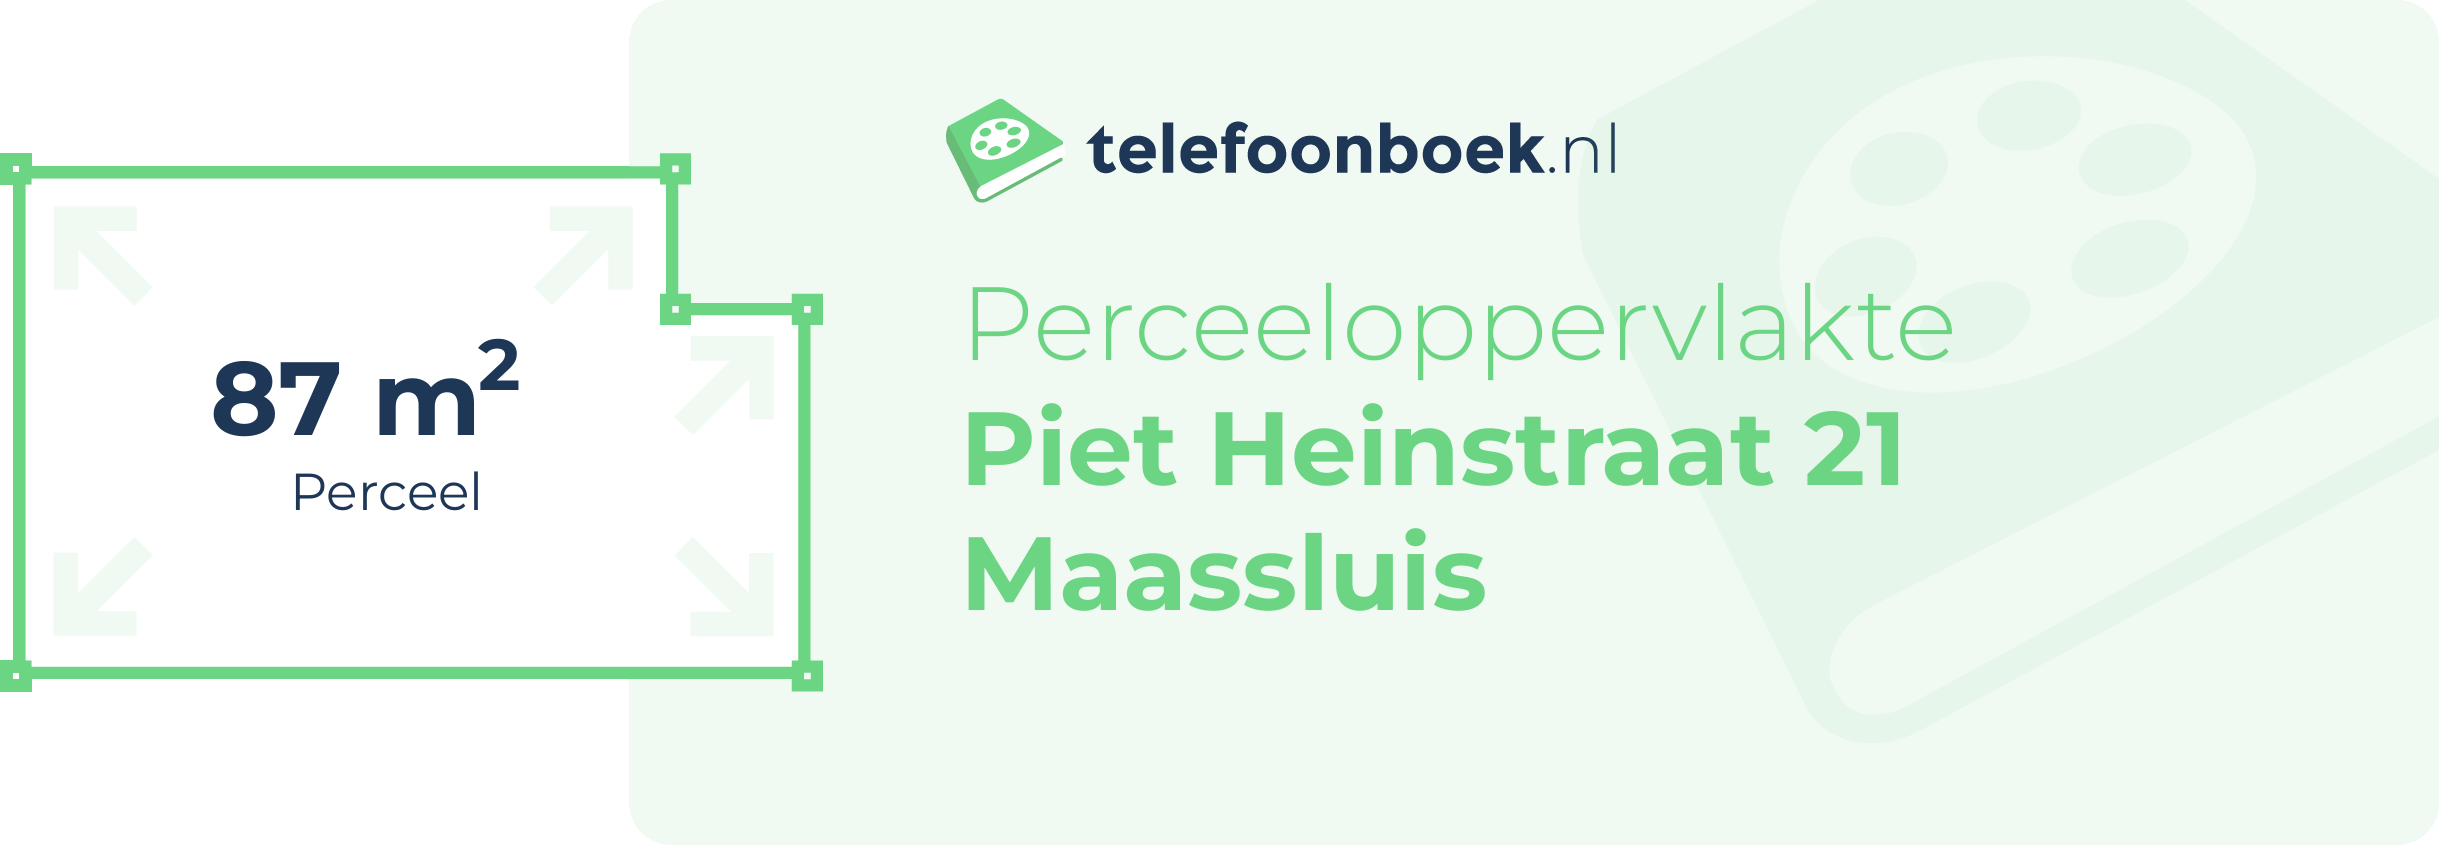 Perceeloppervlakte Piet Heinstraat 21 Maassluis